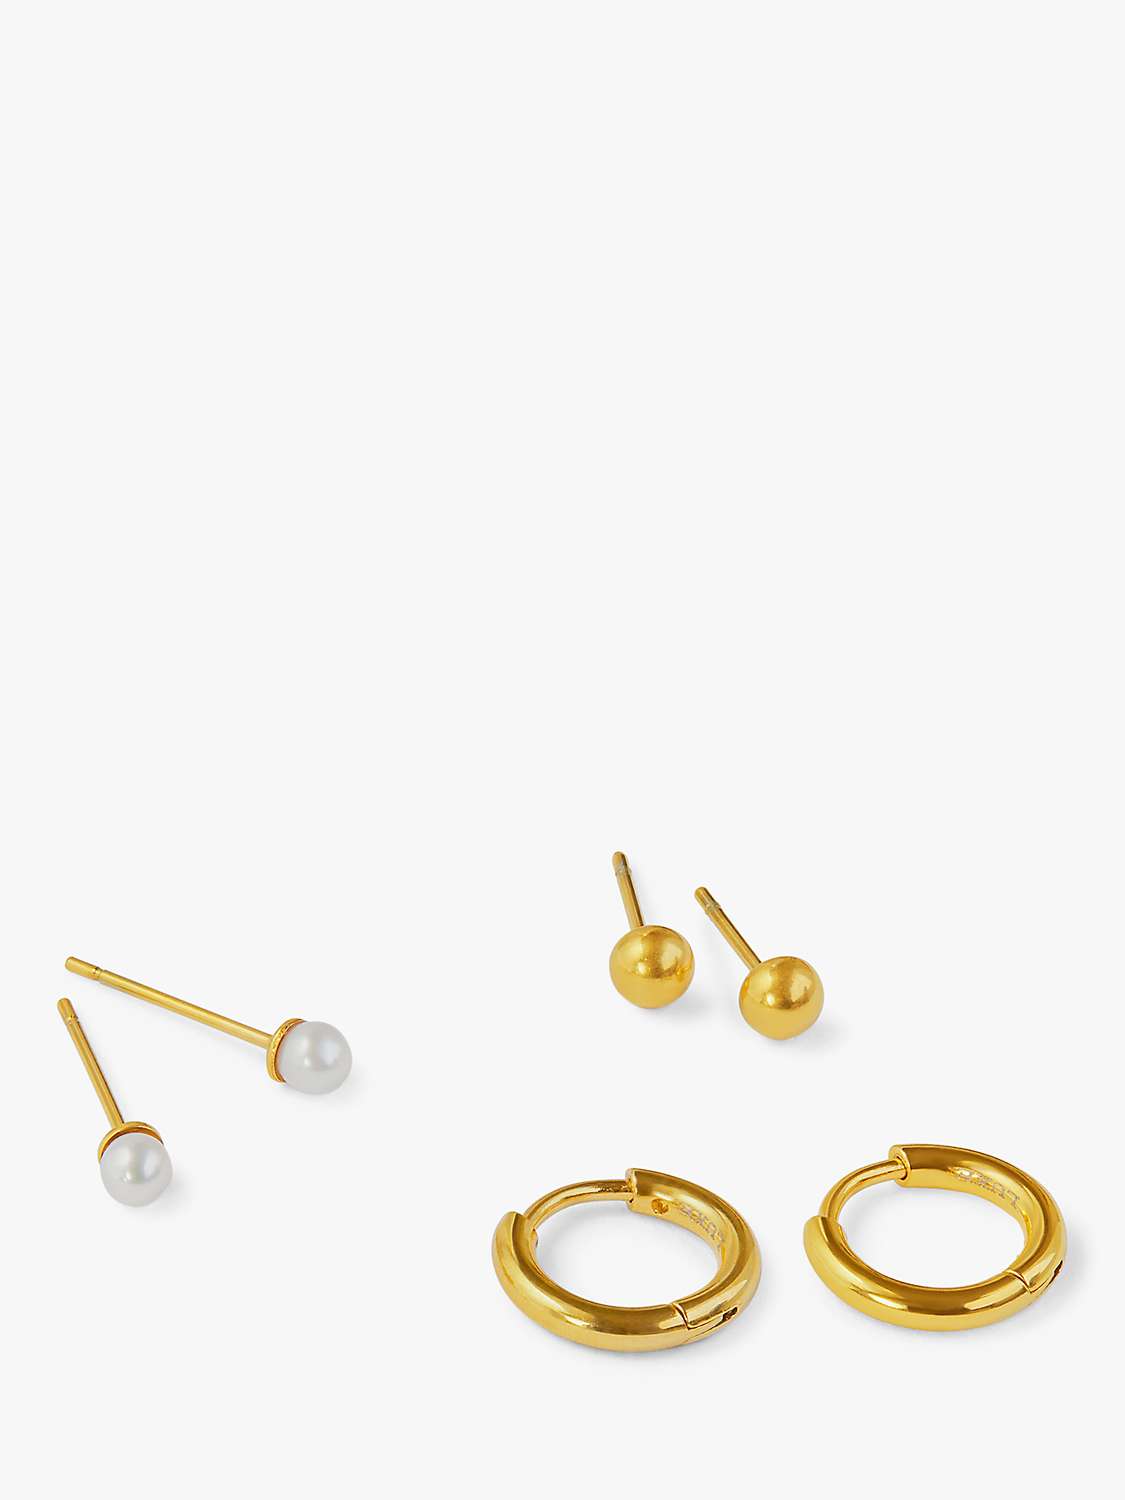 Buy Orelia Luxe Pearl Stud and Huggie Hoop Earrings, Pack of 3, Gold Online at johnlewis.com